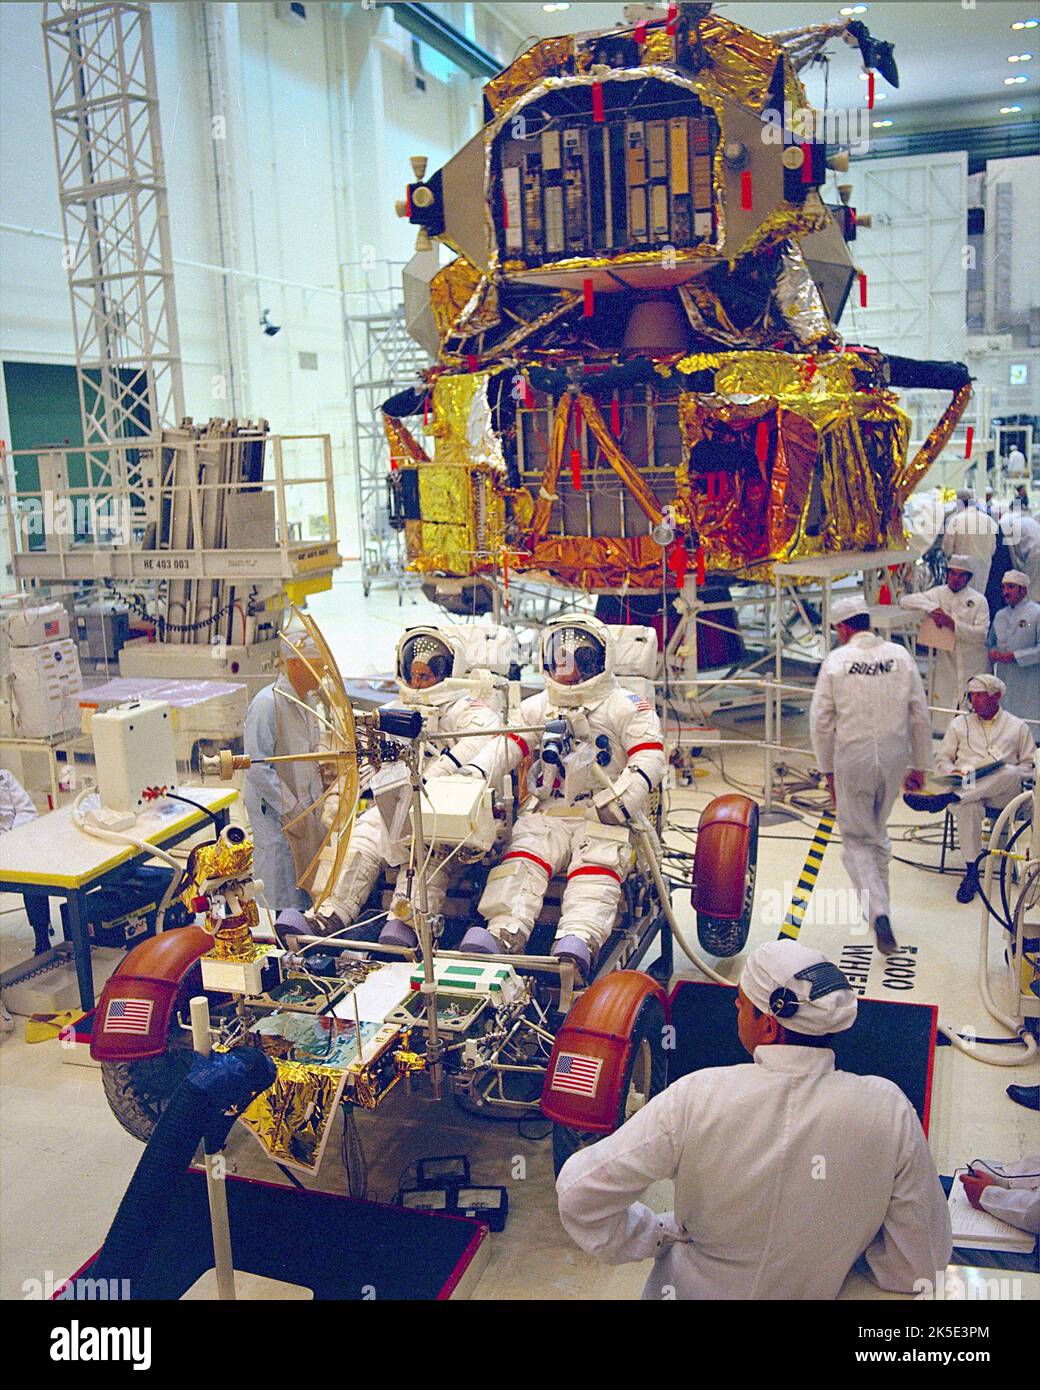 Tests Von Lunar Rover. Apollo-17-Astronauten nahmen an Vorflugtests im Kennedy Space Center der NASA in Florida, USA, Teil, um sicherzustellen, dass der Mondrover auf dem Mond funktionieren würde. Während der Entwicklung wurde der Rover im Marshall Space Flight Center der NASA in Huntsville, Alabama, ausgiebig getestet. Quelle: NASA Stockfoto